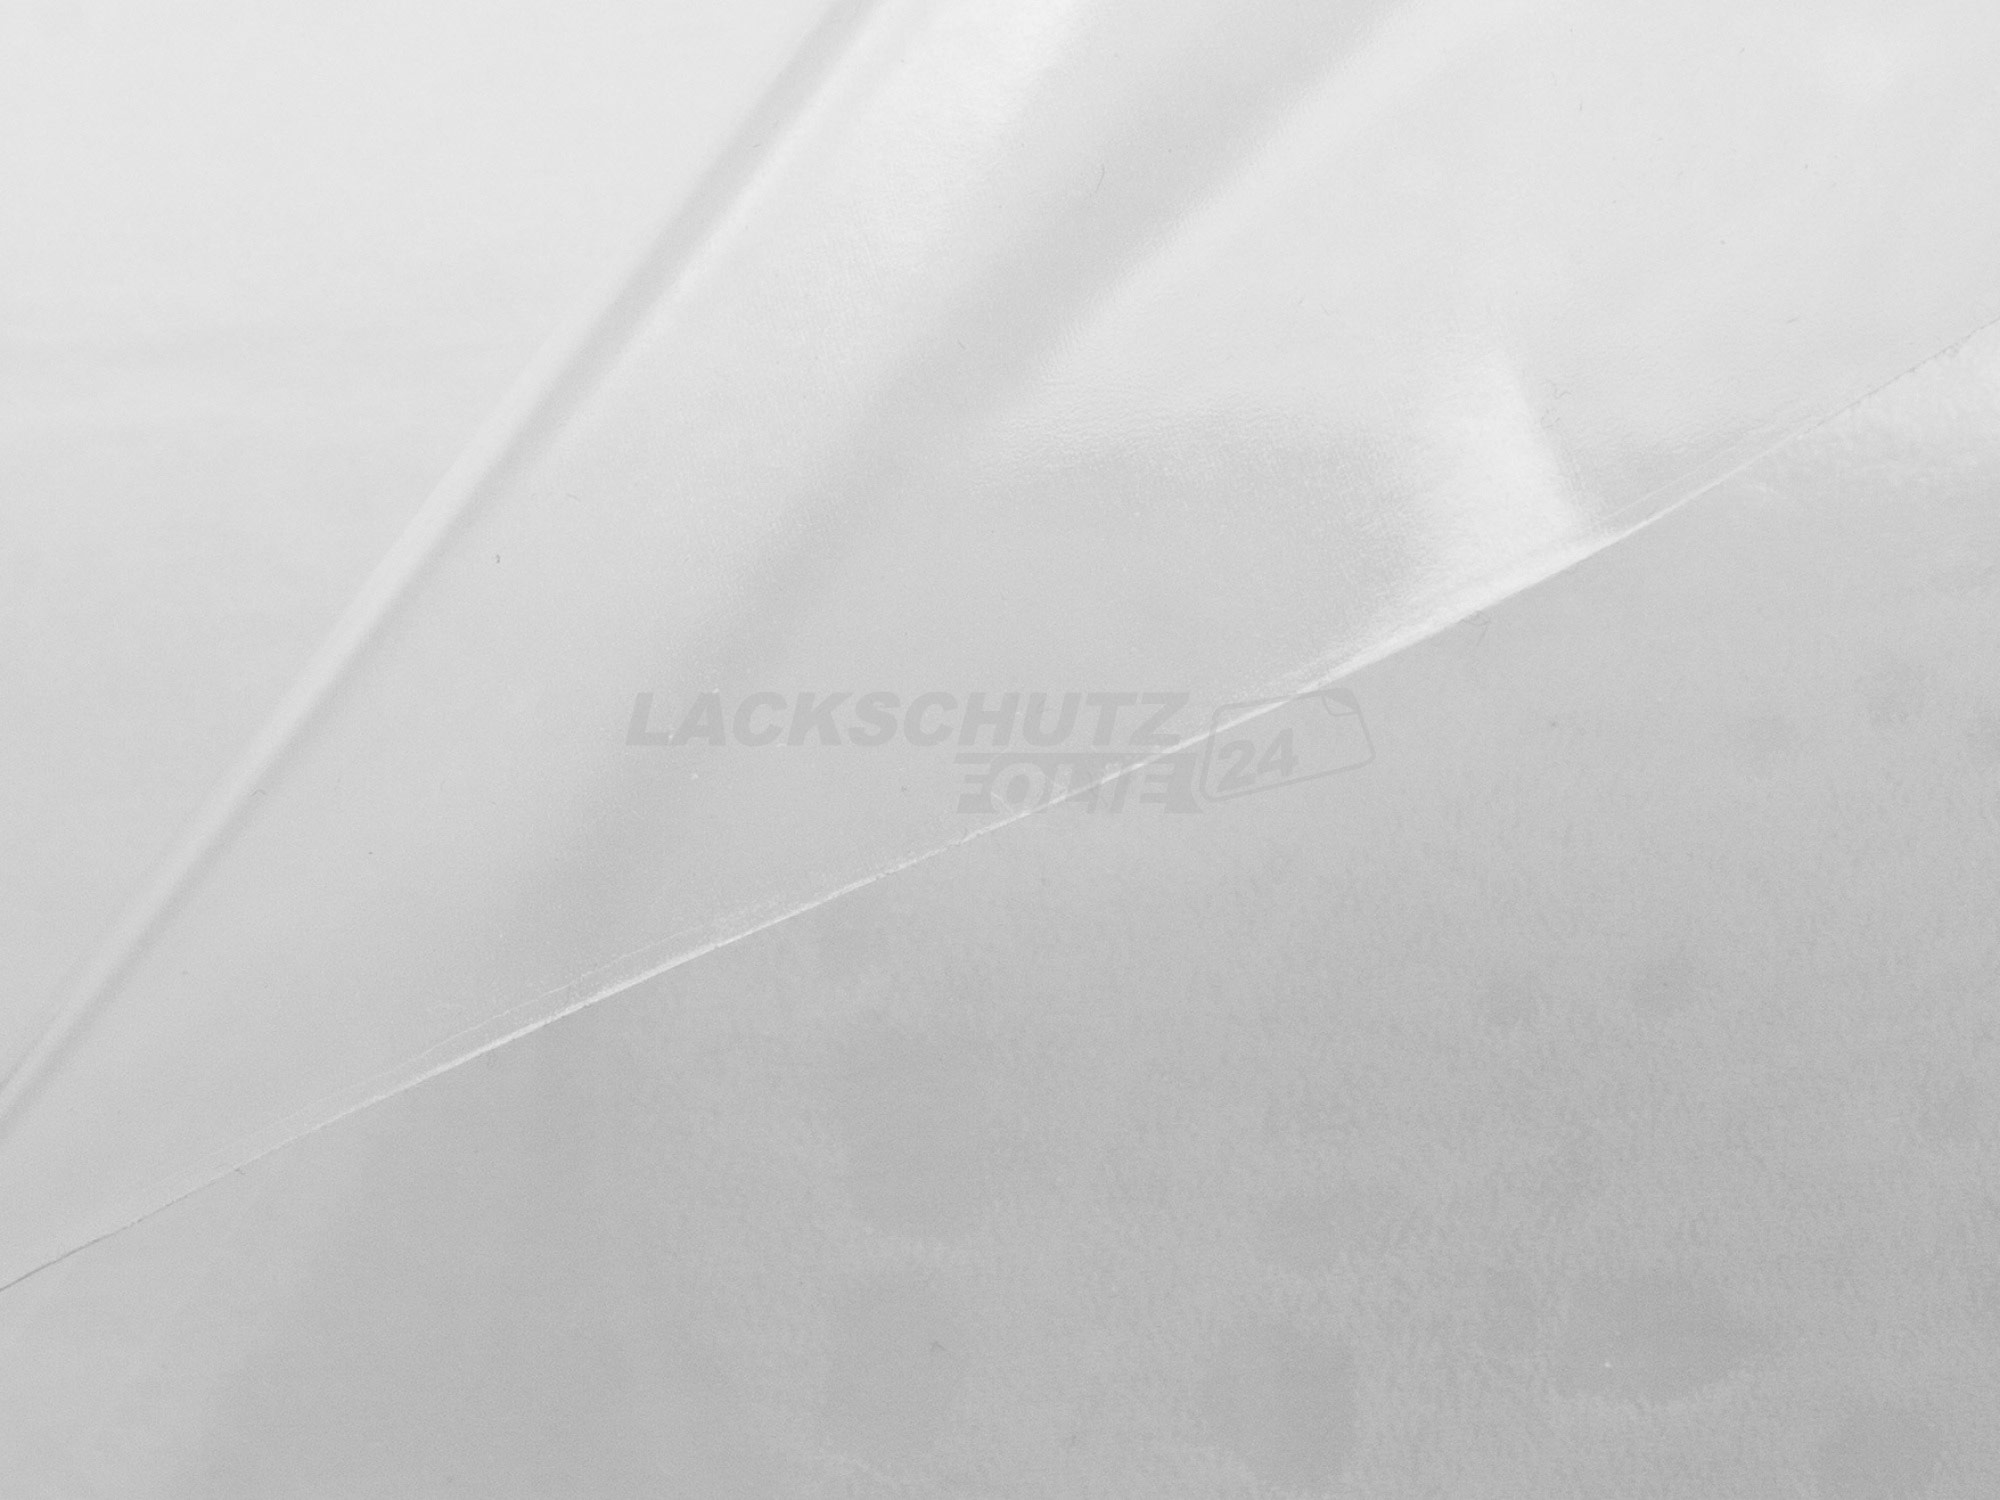 Ladekantenschutzfolie - Transparent Glatt Hochglänzend für Mercedes-Benz A-Klasse Typ V177, Limousine, ab BJ 05/2018